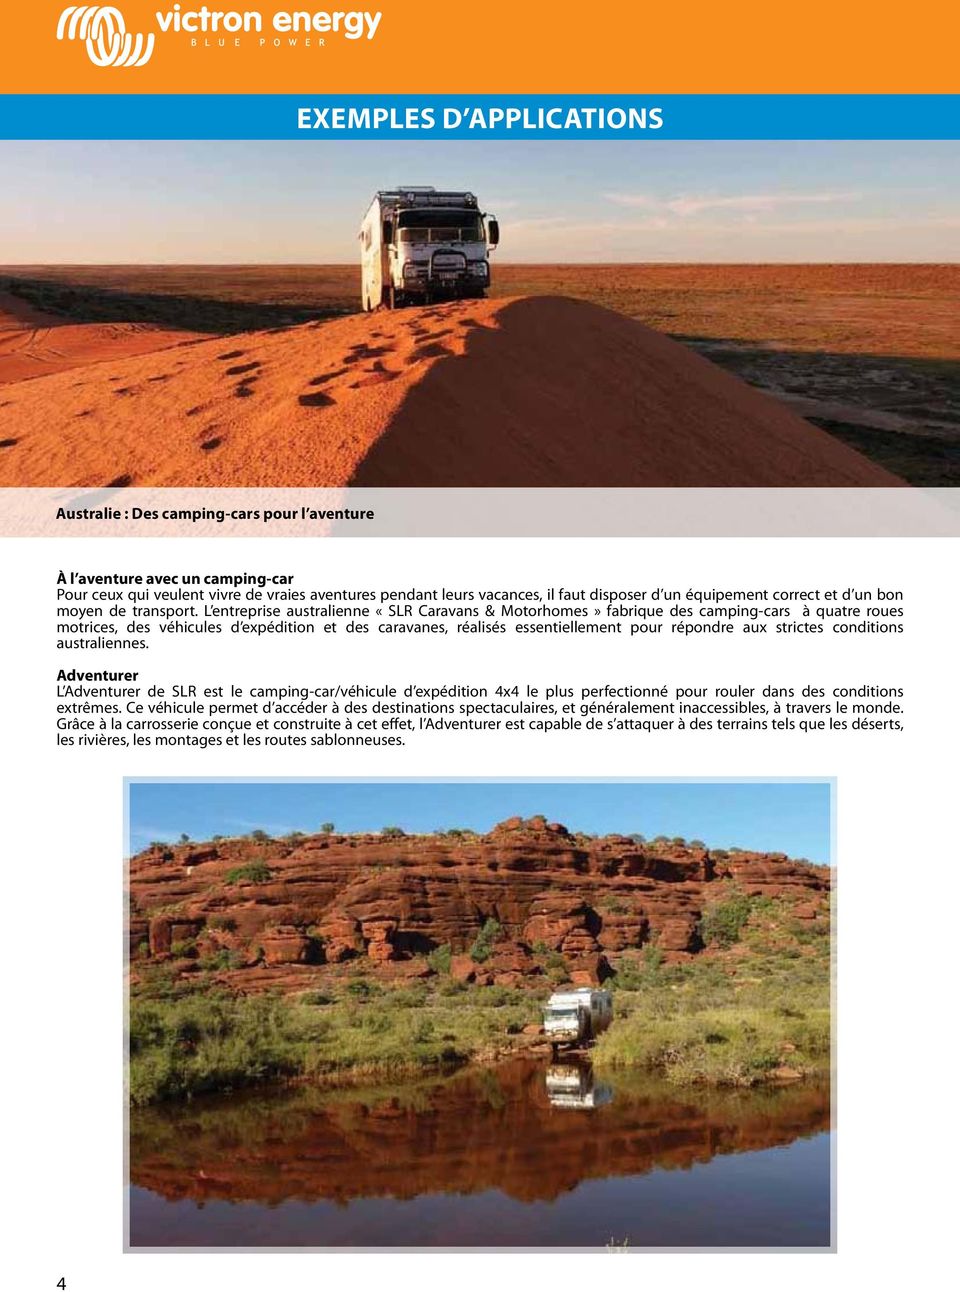 l entreprise australienne «slr Caravans & motorhomes» fabrique des camping-cars à quatre roues motrices, des véhicules d expédition et des caravanes, réalisés essentiellement pour répondre aux